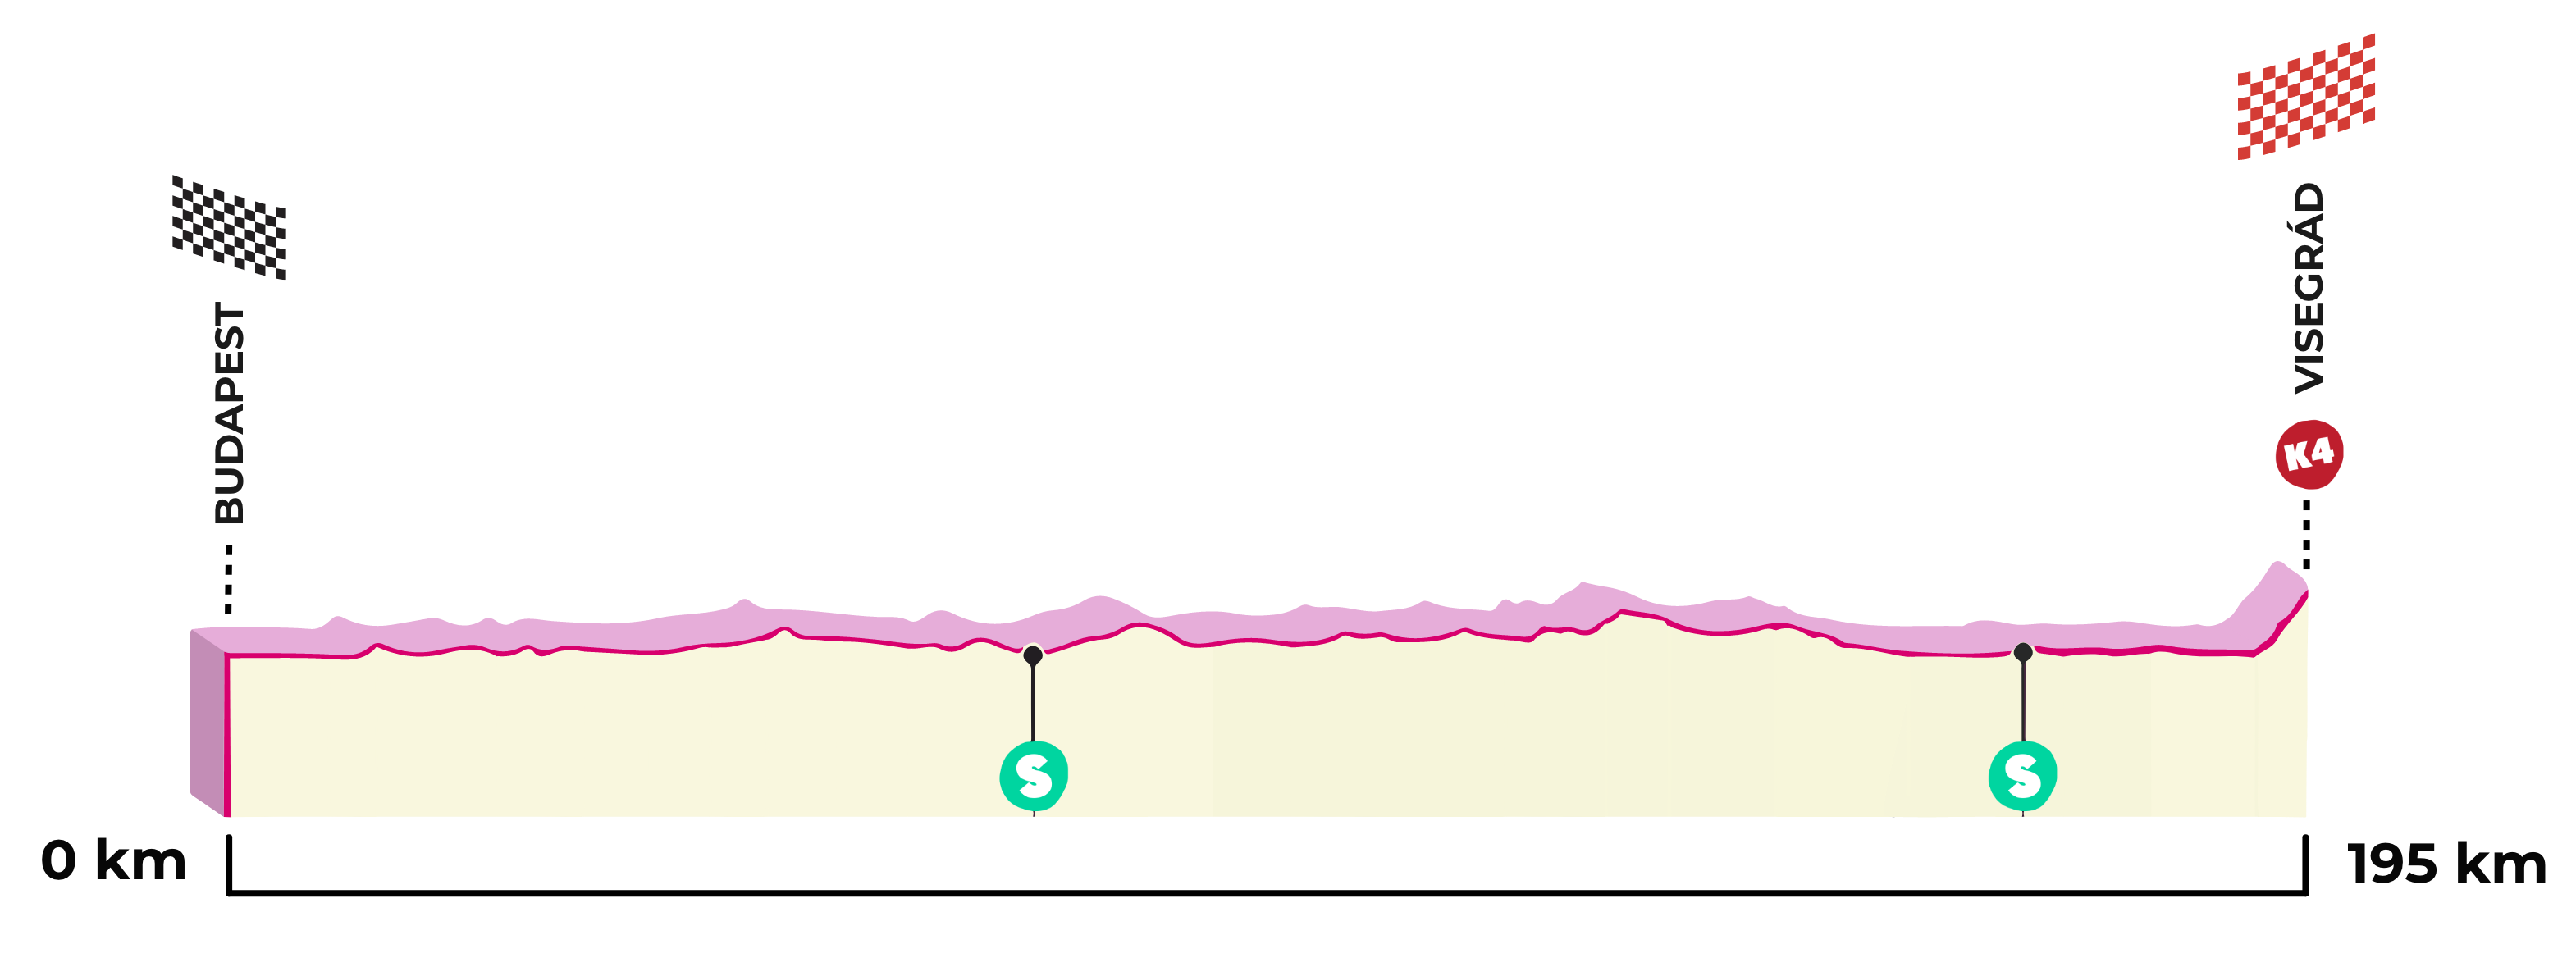 1. etape af Giro d'Italia 2022